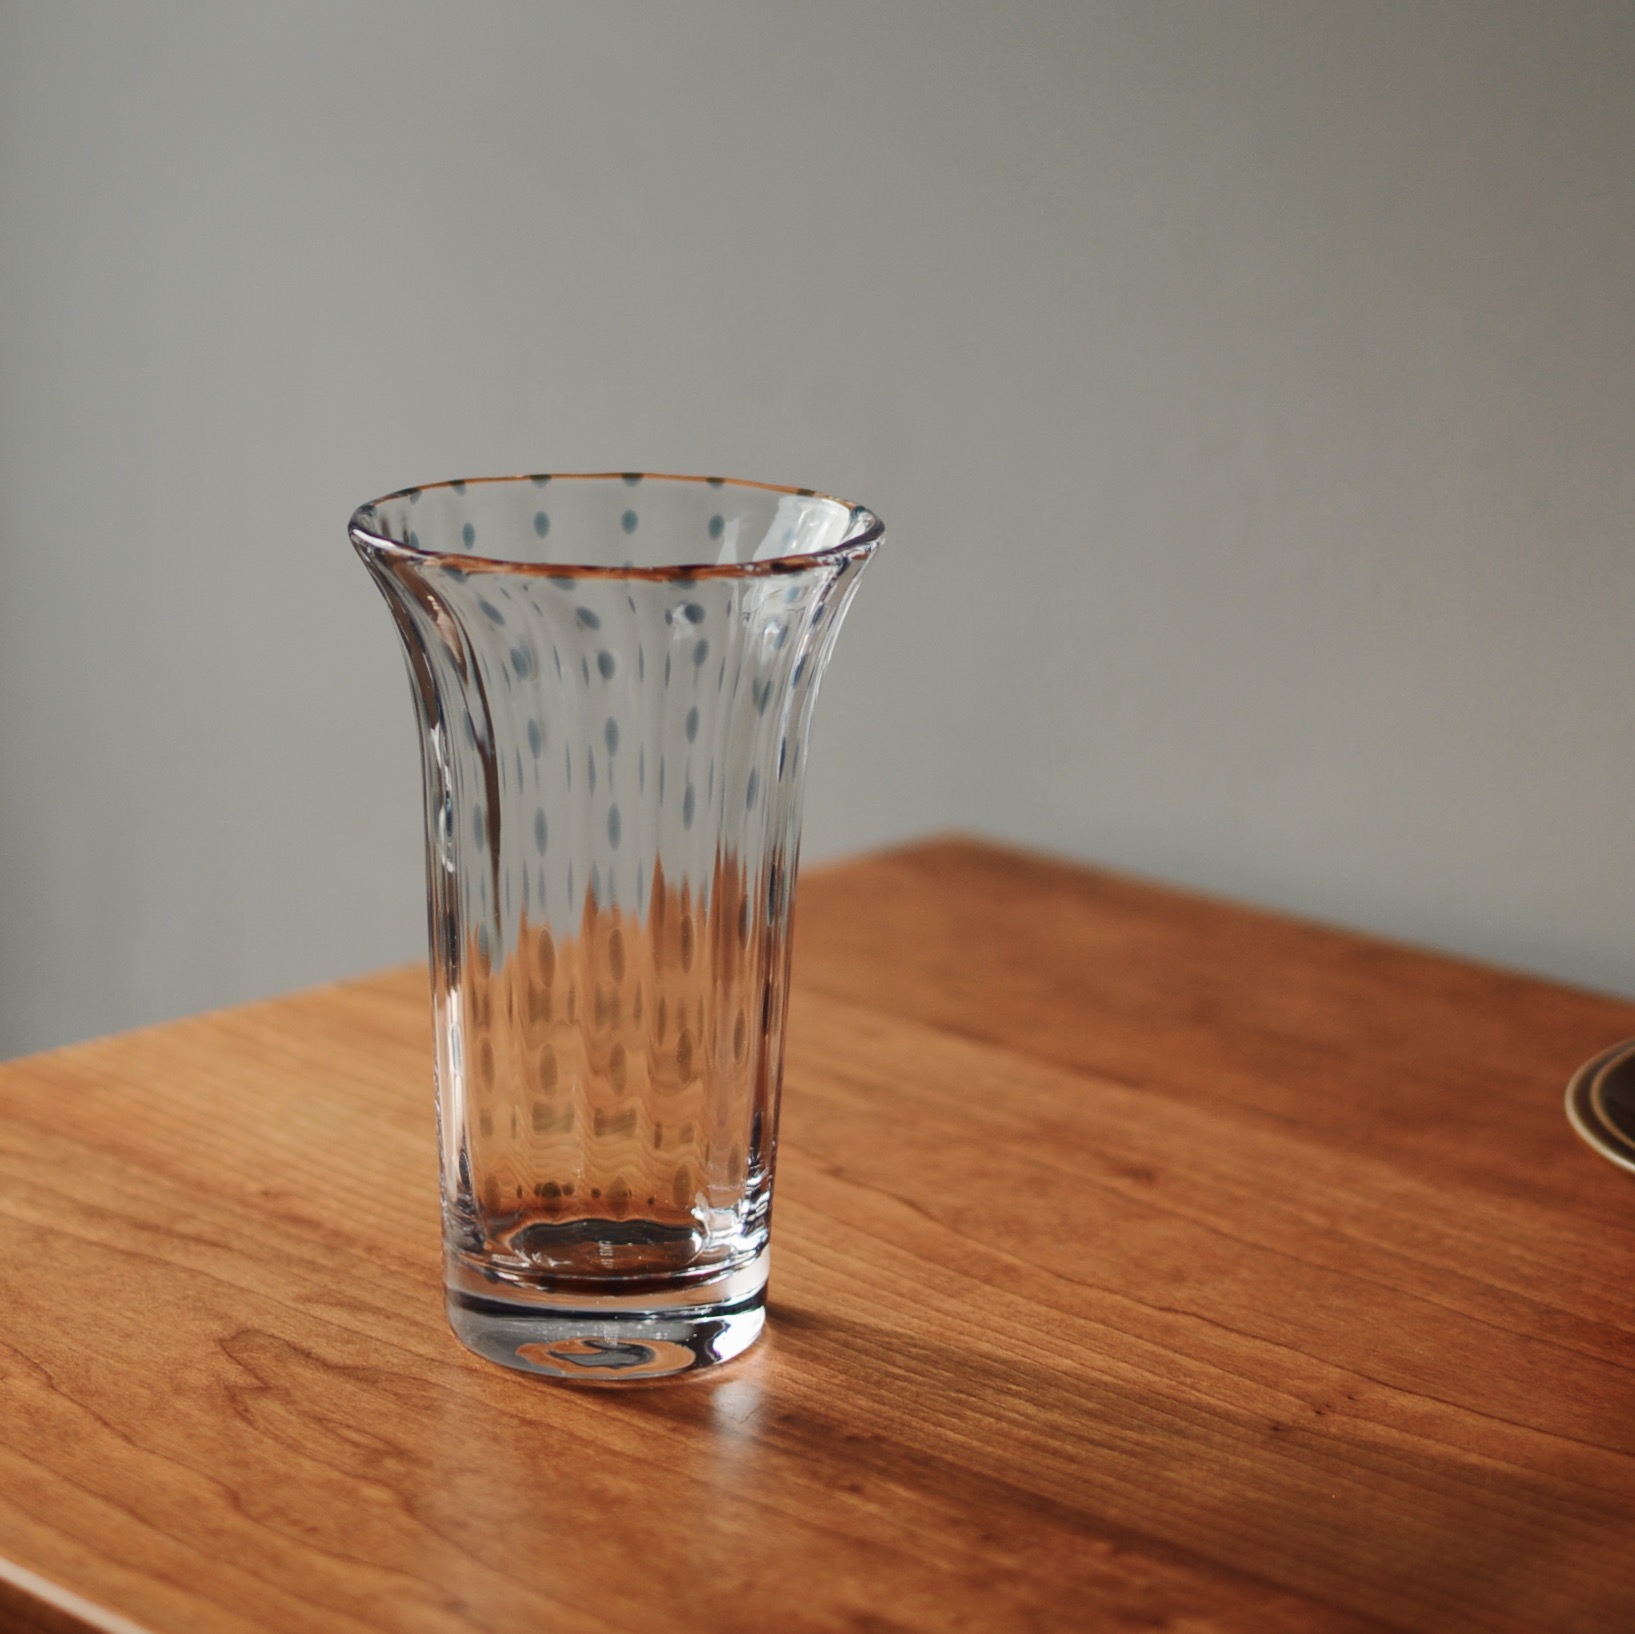 浪漫簡約藍雨滴玻璃花瓶為居家空間增添一抹清新氣息